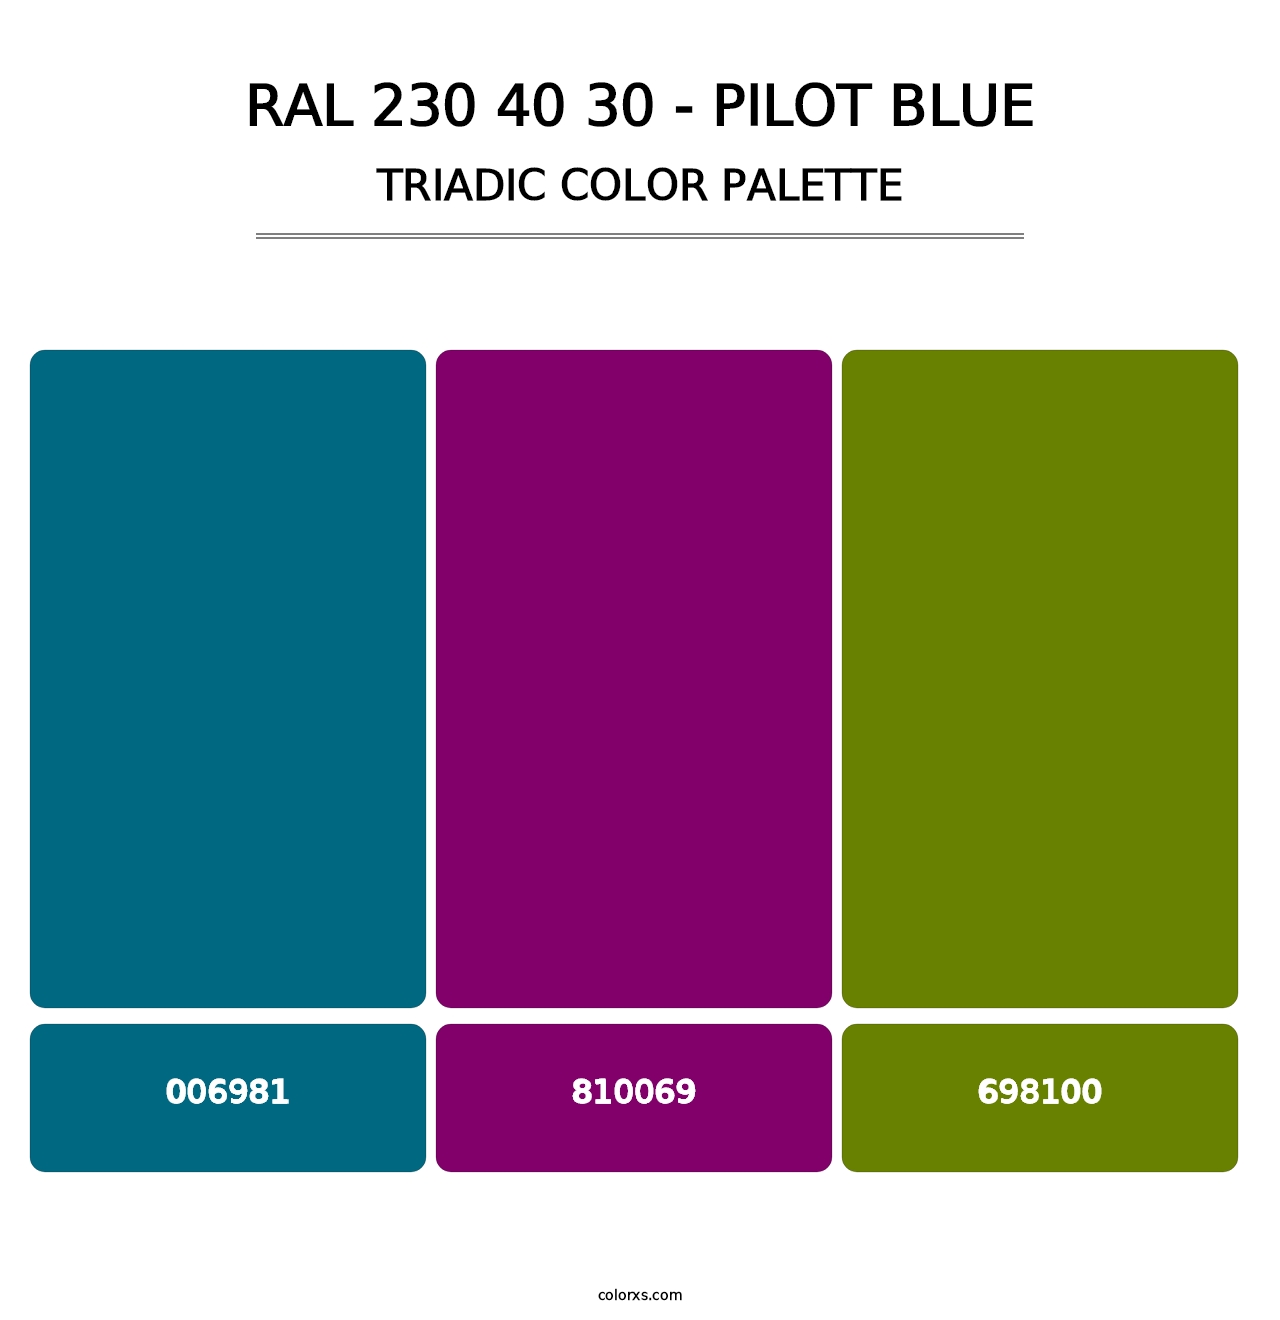 RAL 230 40 30 - Pilot Blue - Triadic Color Palette